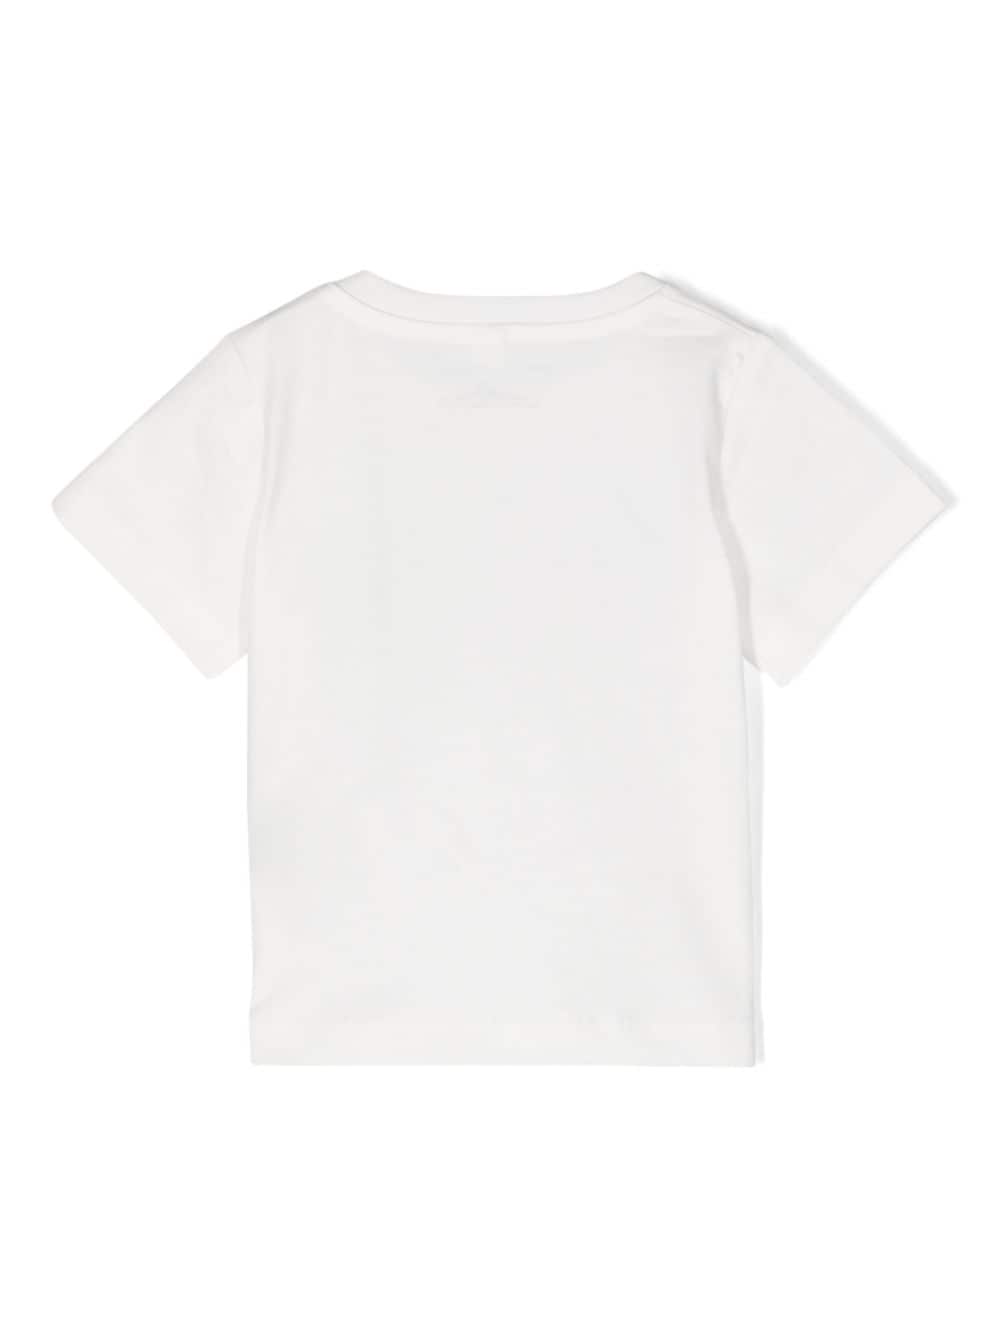 Shell print t-shirt